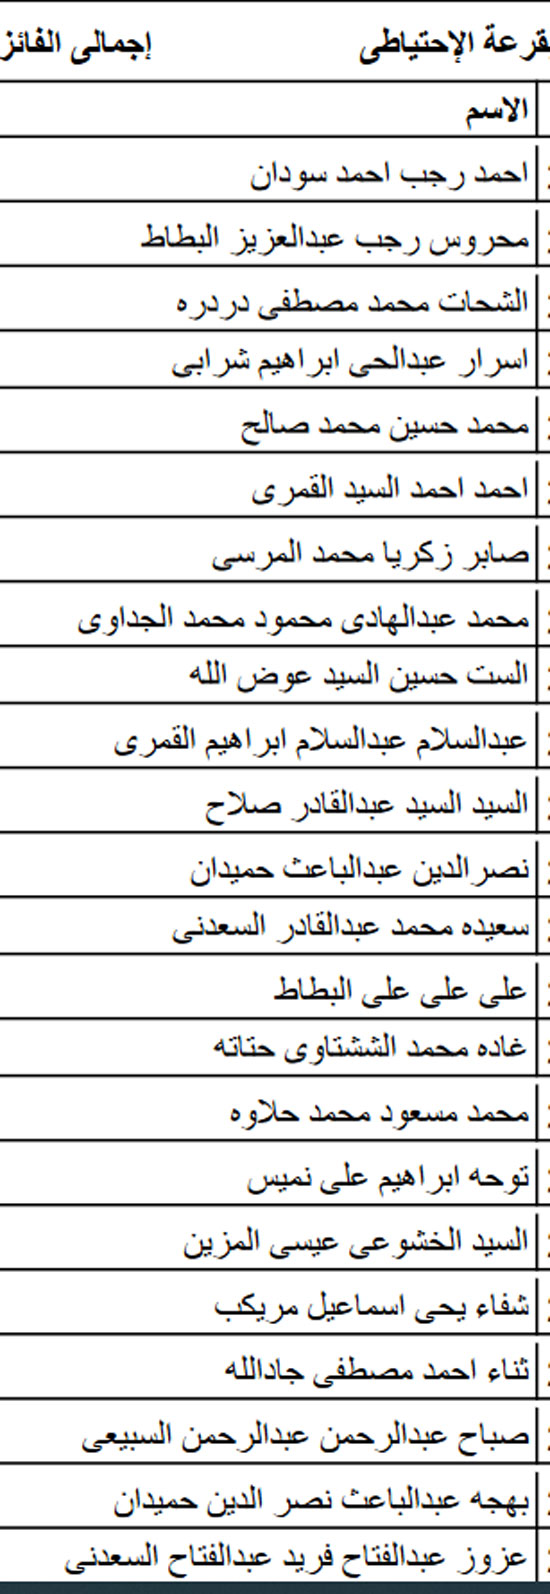 أسماء الفائزين بقرعة الحج للجمعيات الأهلية بكفر الشيخ  (10)